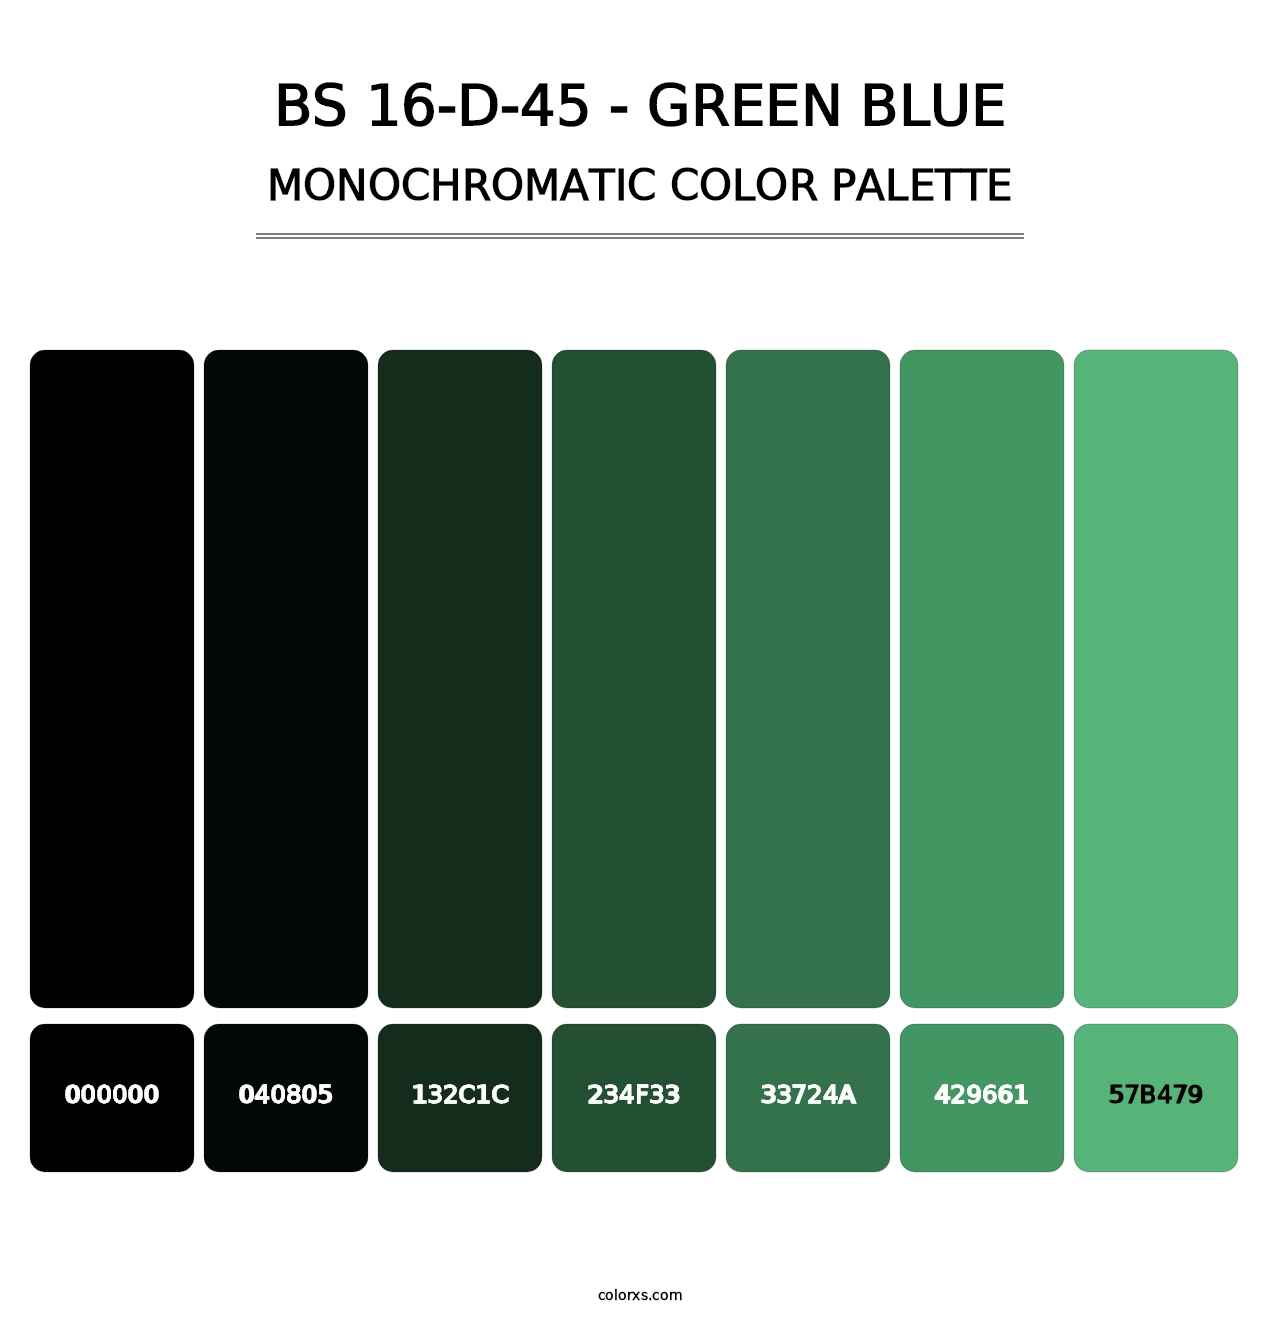 BS 16-D-45 - Green Blue - Monochromatic Color Palette